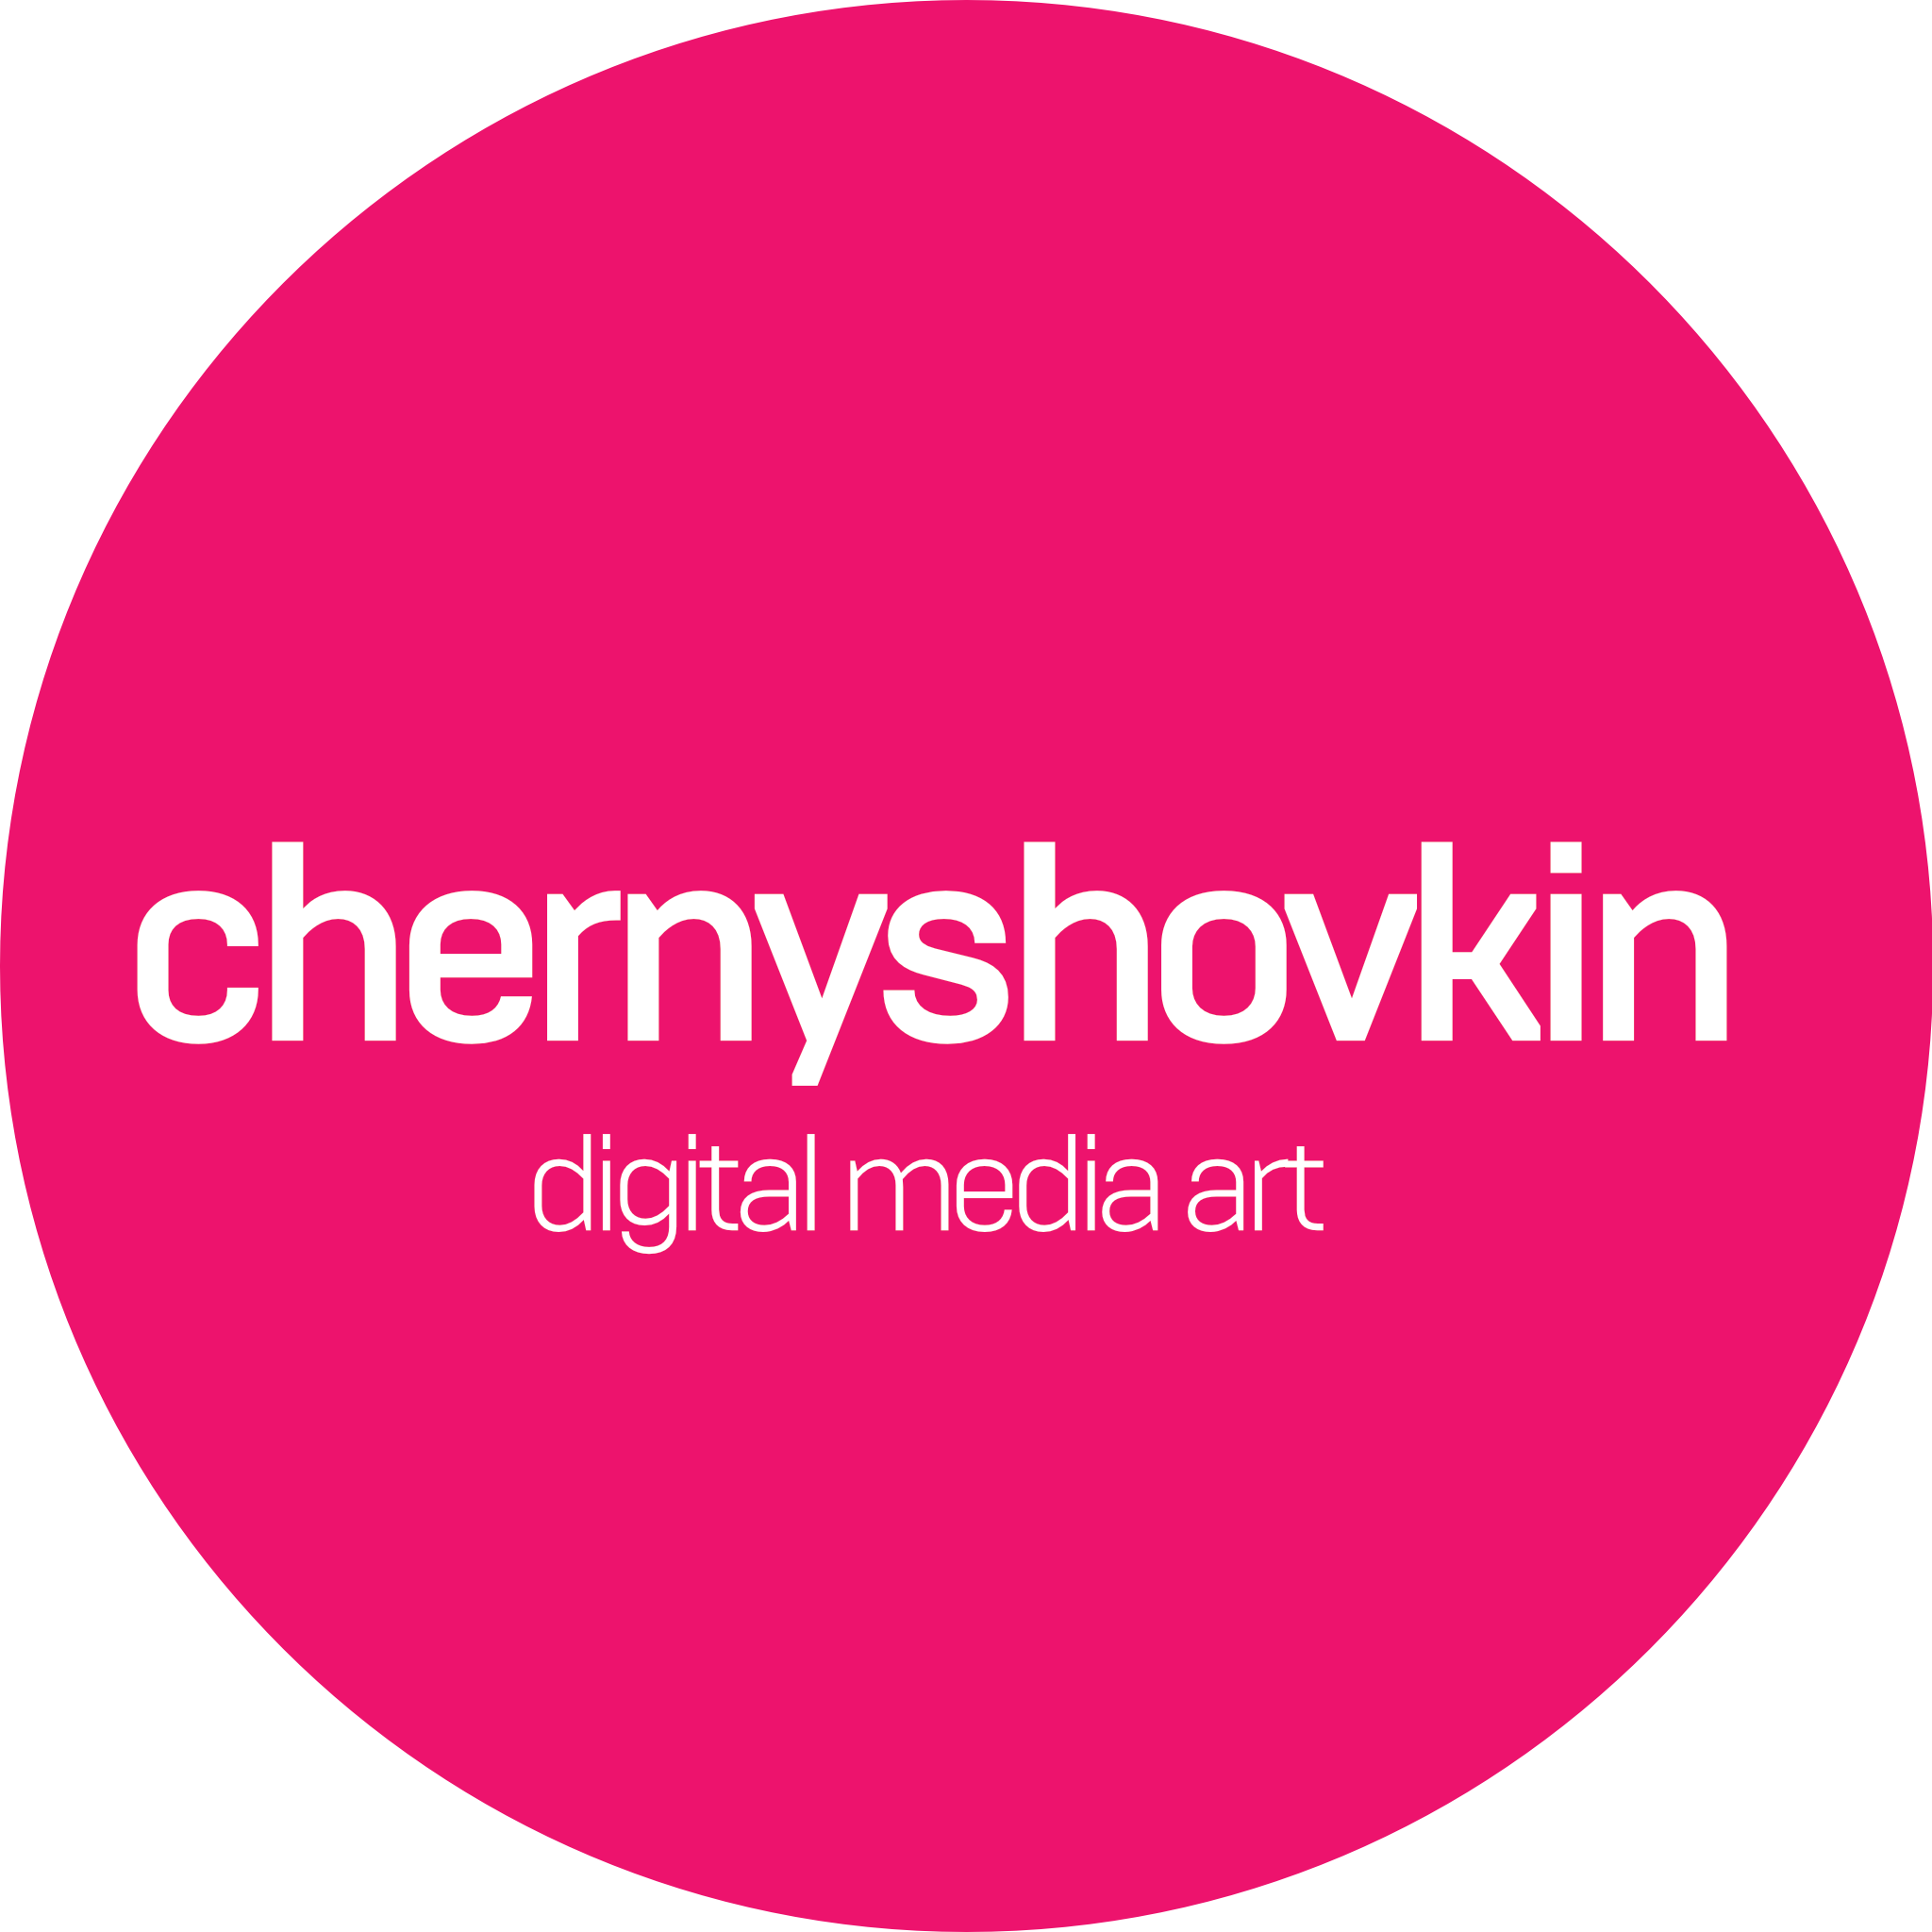 chernyshovkin